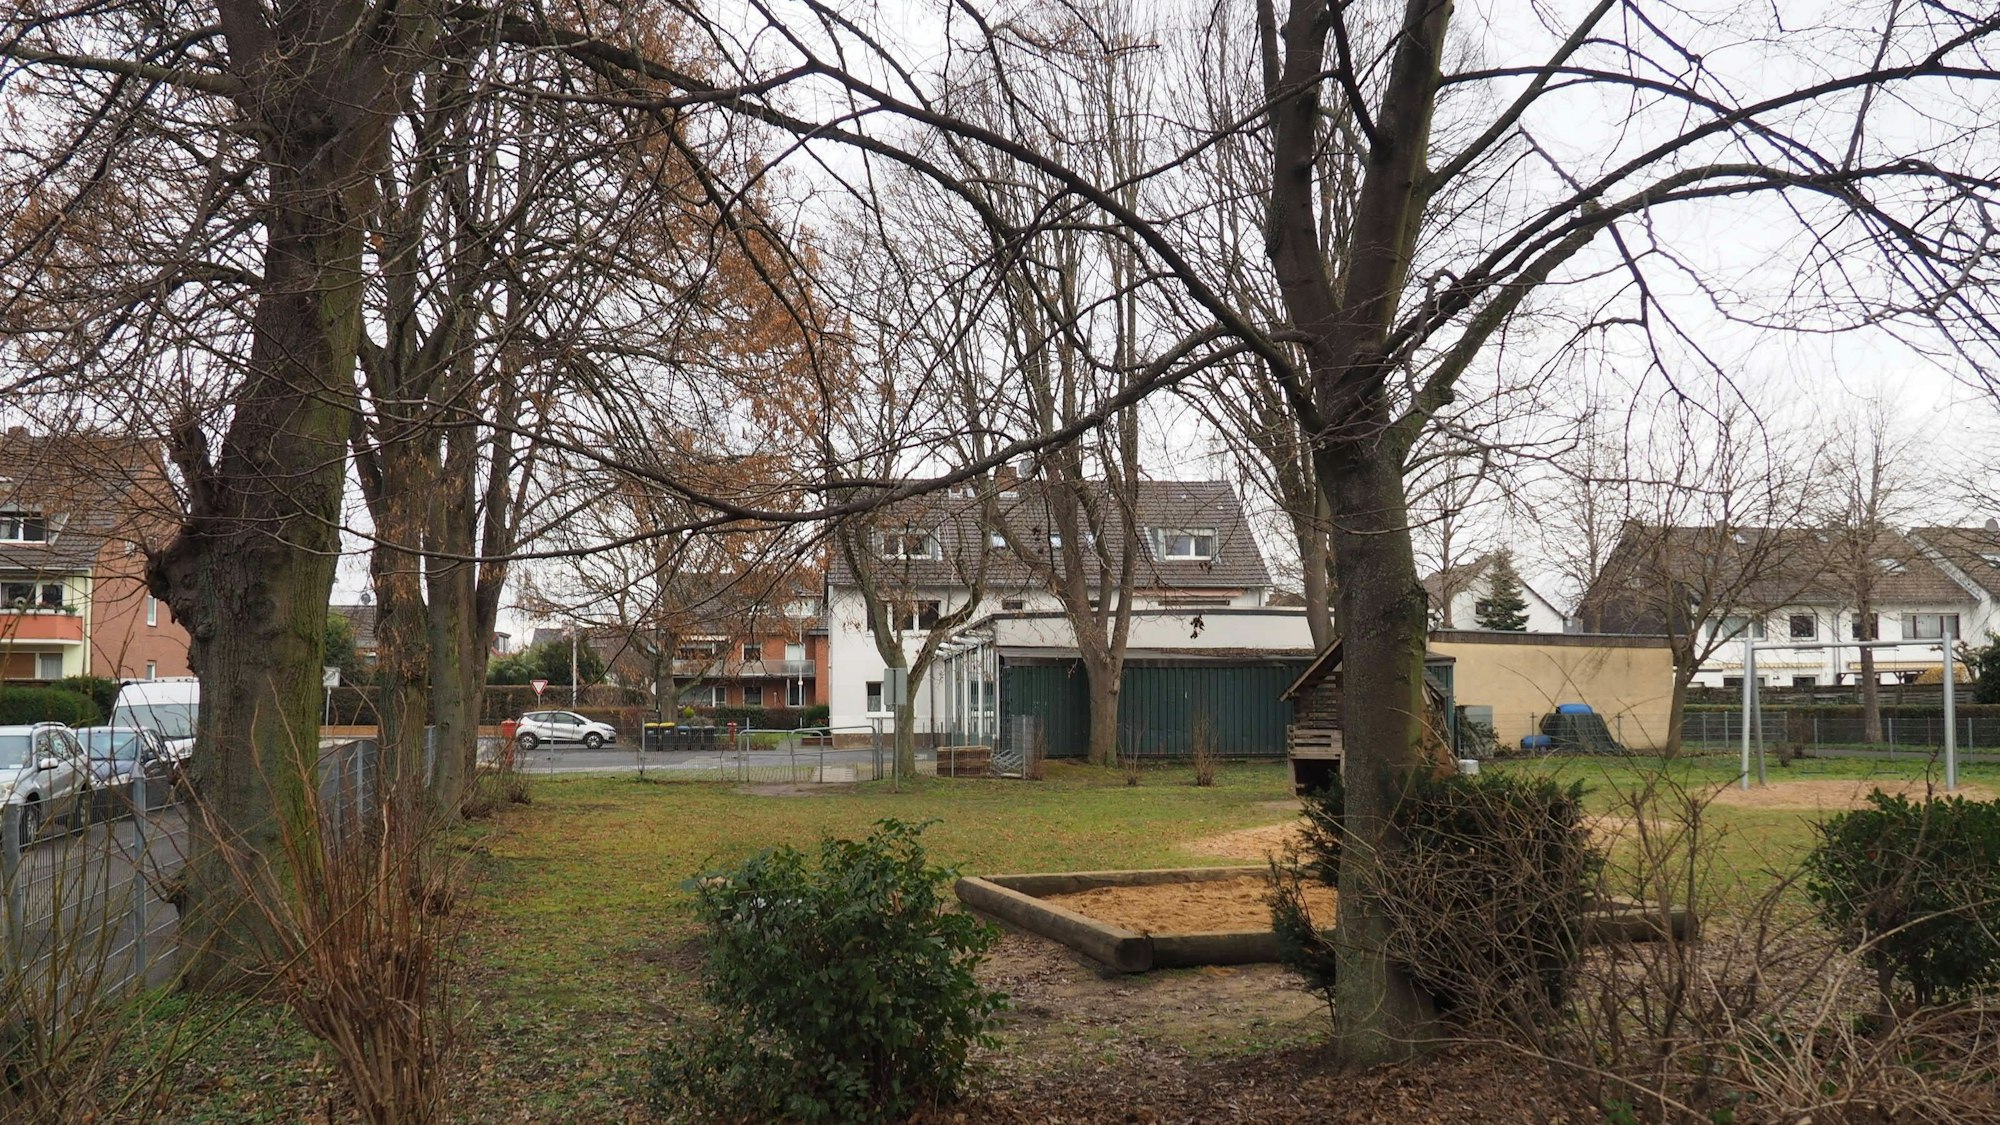 Im Hintergrund das Feuerwehrgerätehaus, im Vordergrund der kleine Park mit alten Bäumen und einem Sandkasten.